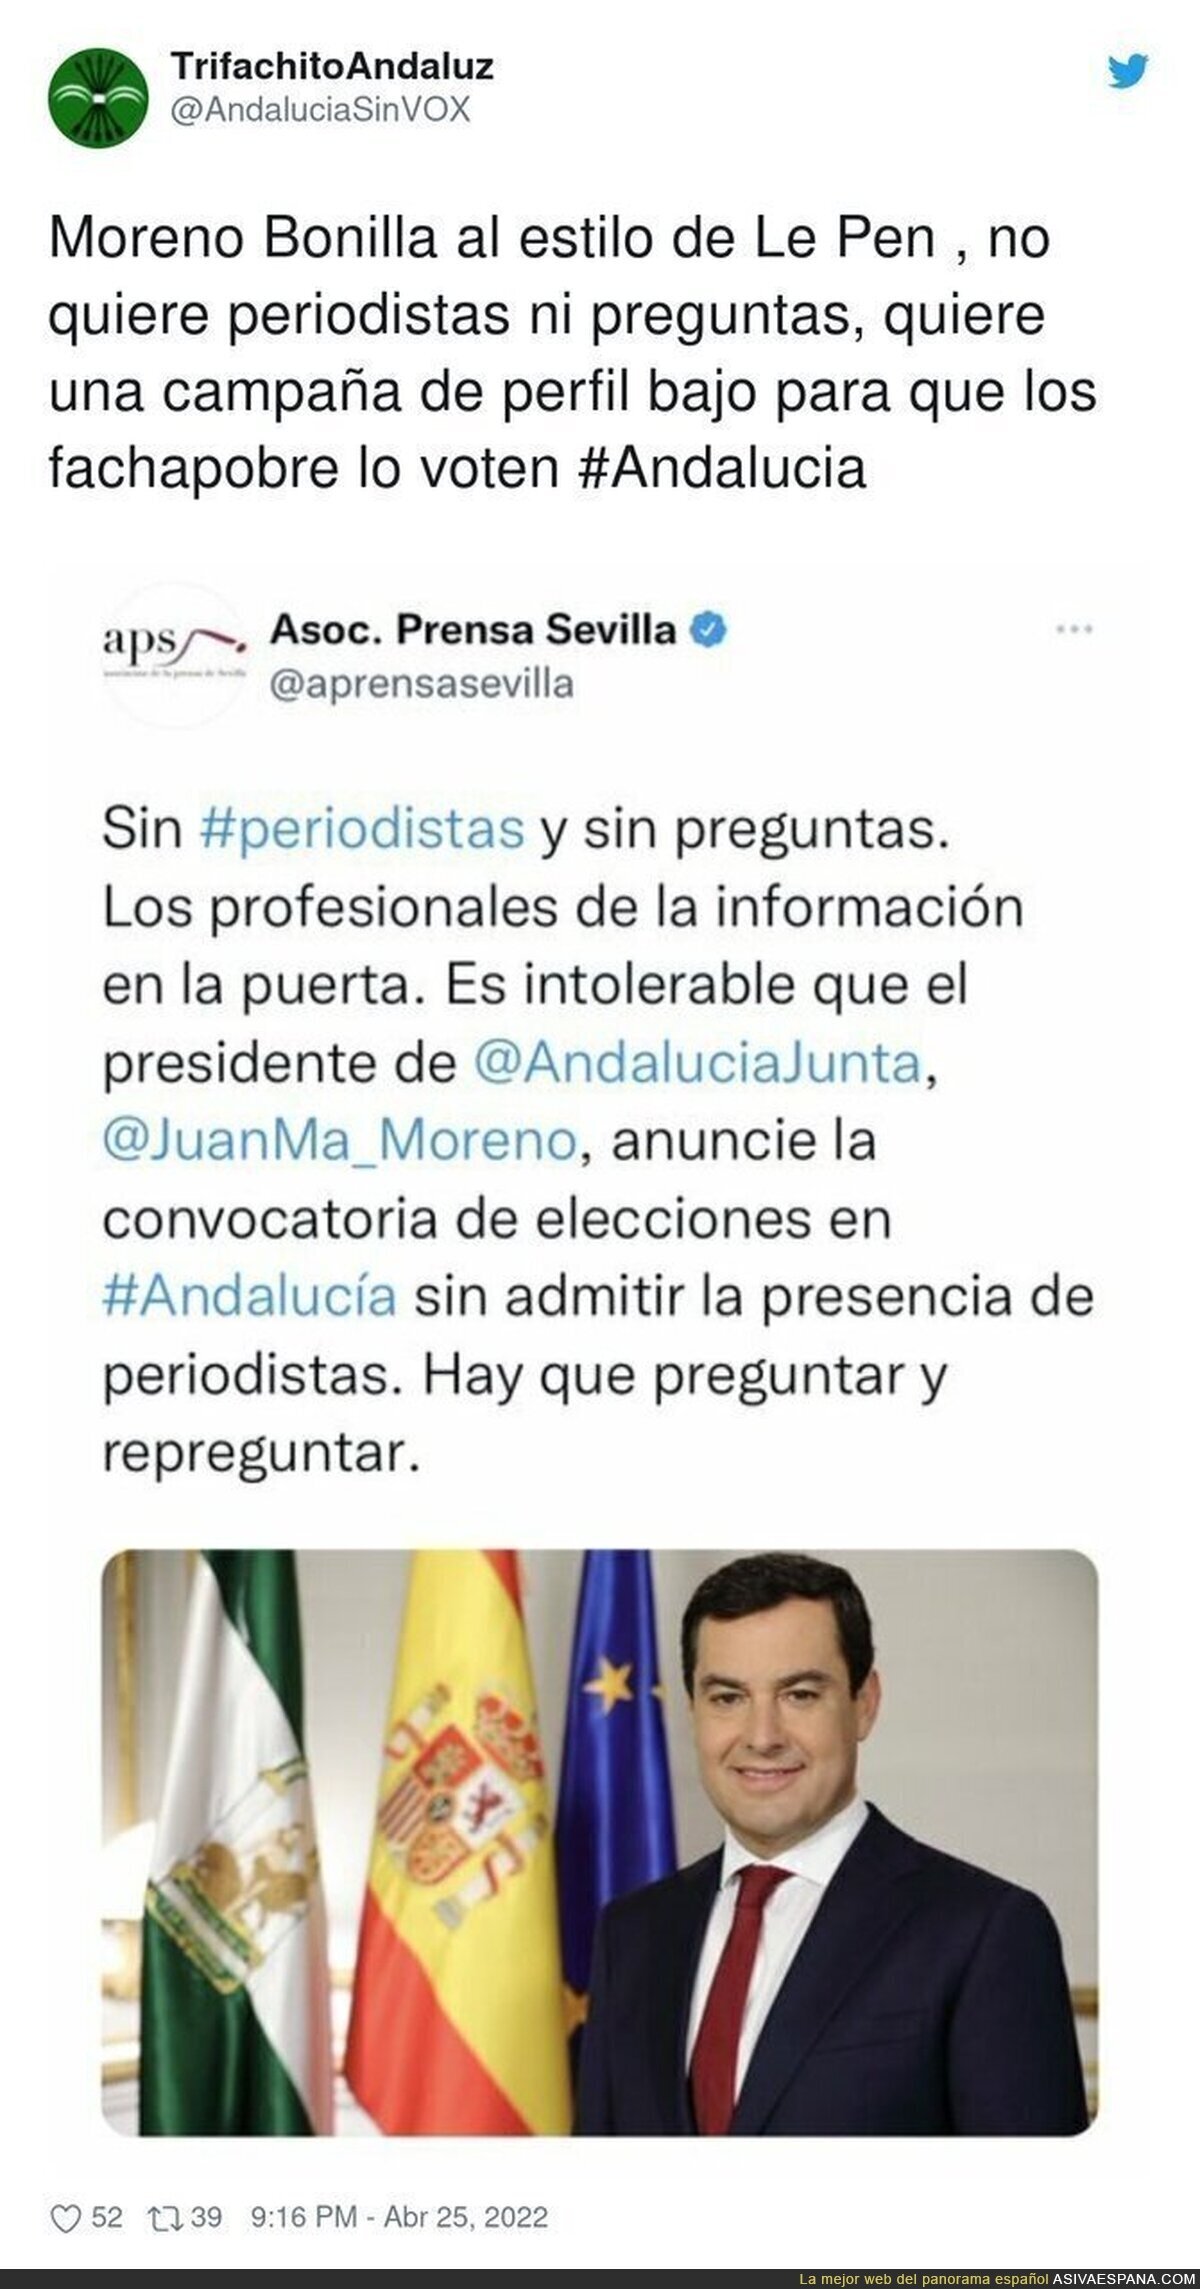 El lamentable estilo de Juanma Moreno con los periodistas